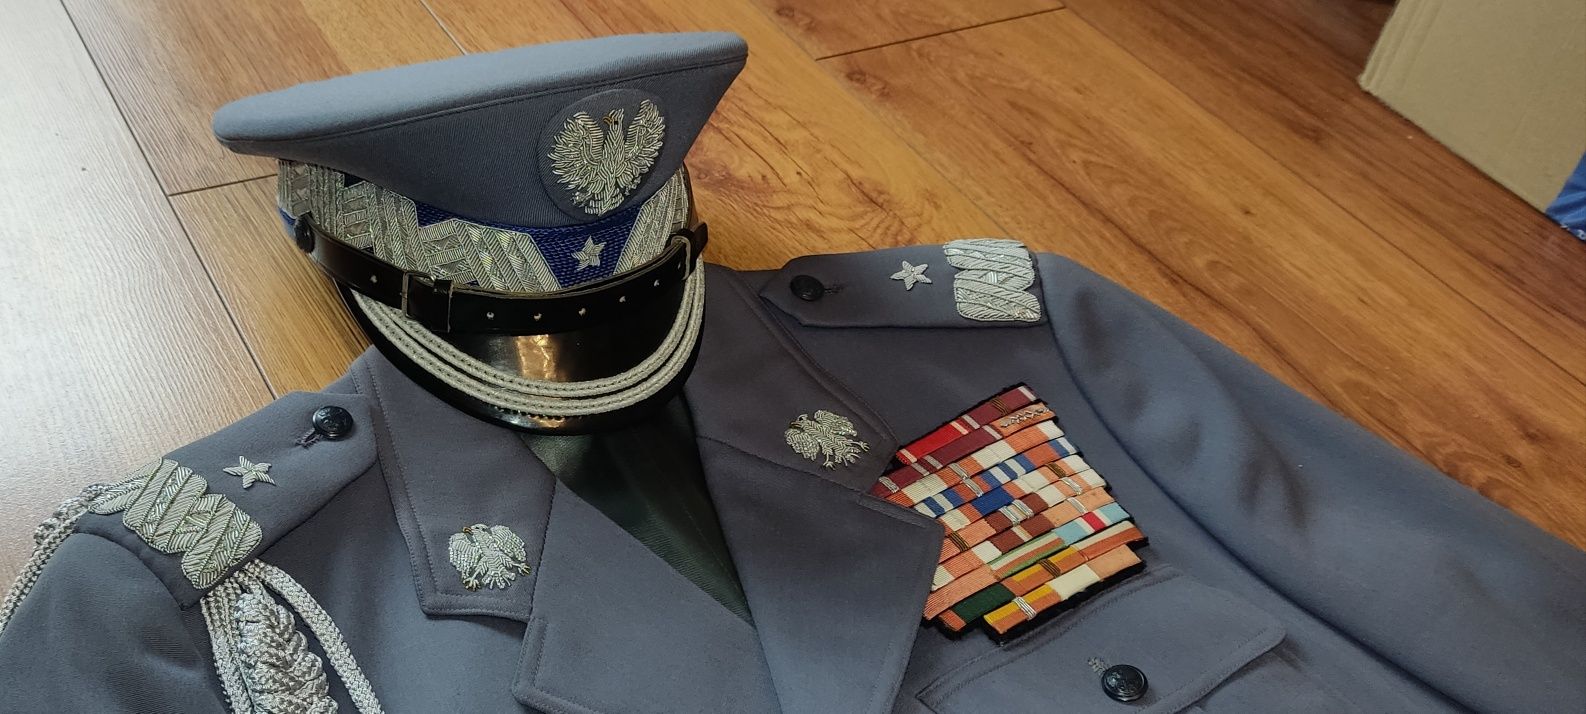 Mundur generała brygady MO generał czapka baretki Milicja milicyjny